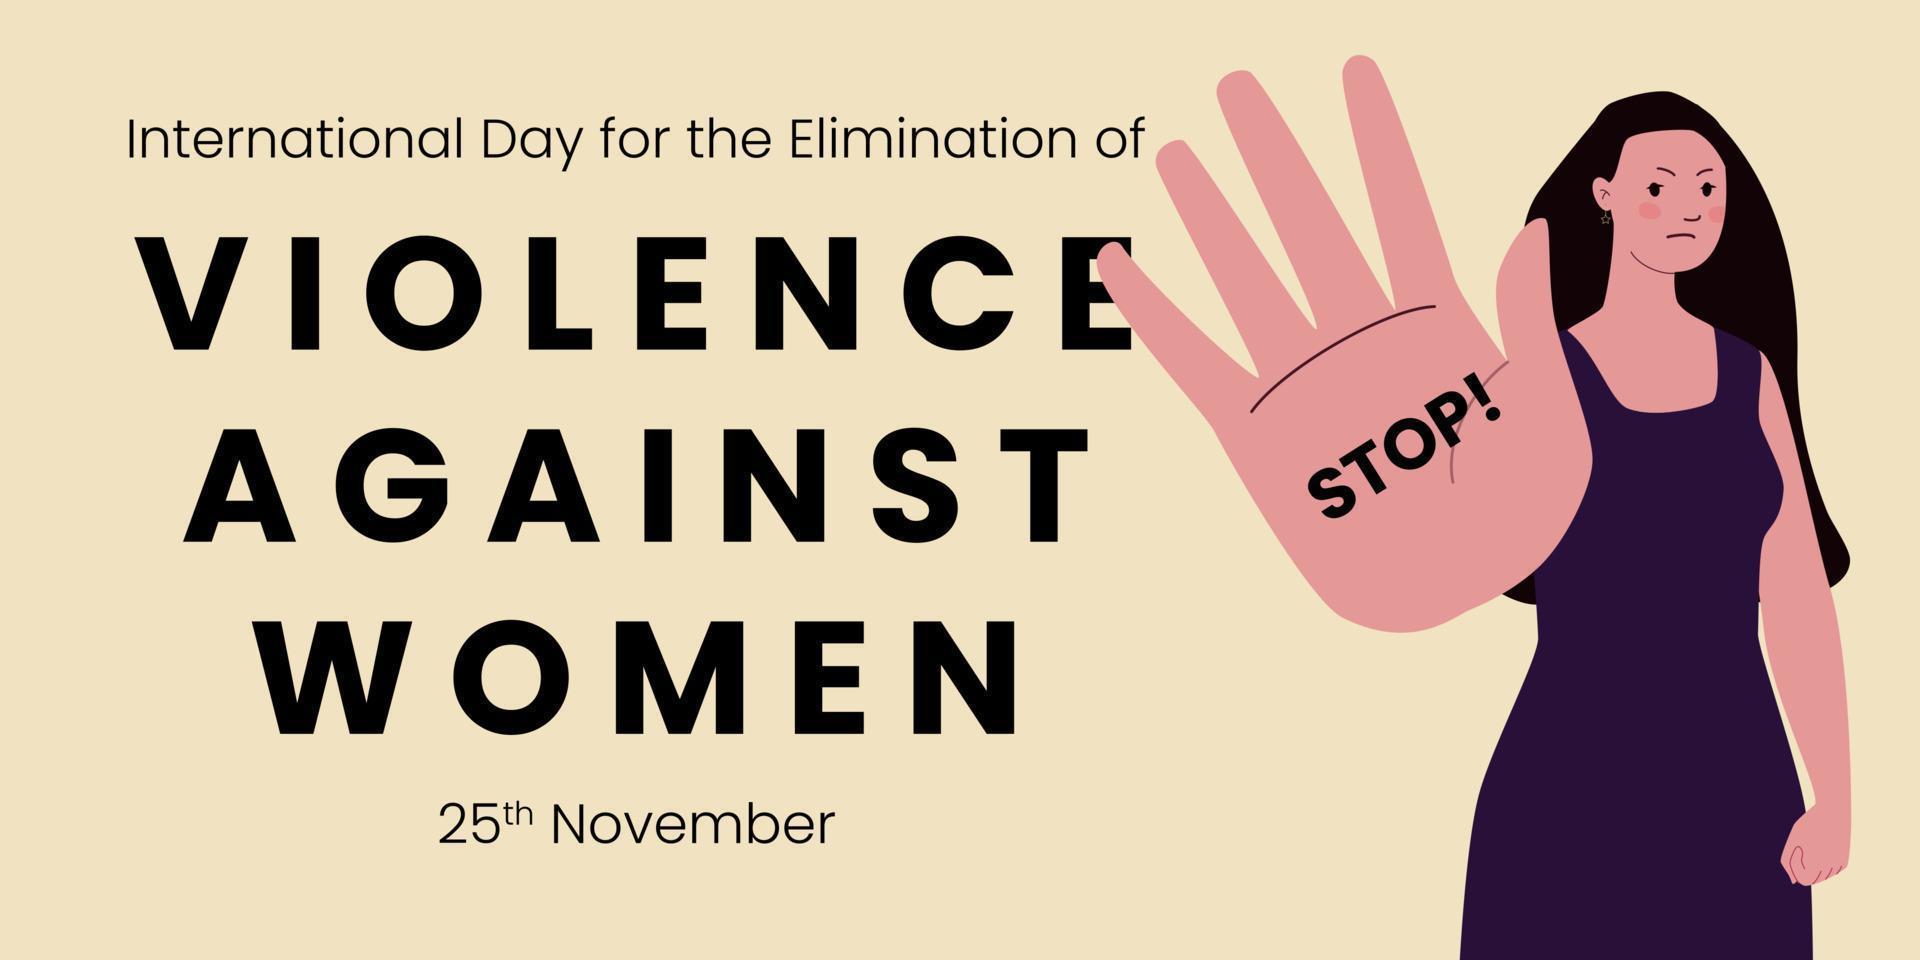 día internacional para la eliminación de la violencia contra la mujer con mujeres apretando los puños y haciendo un gesto de resistencia. vector